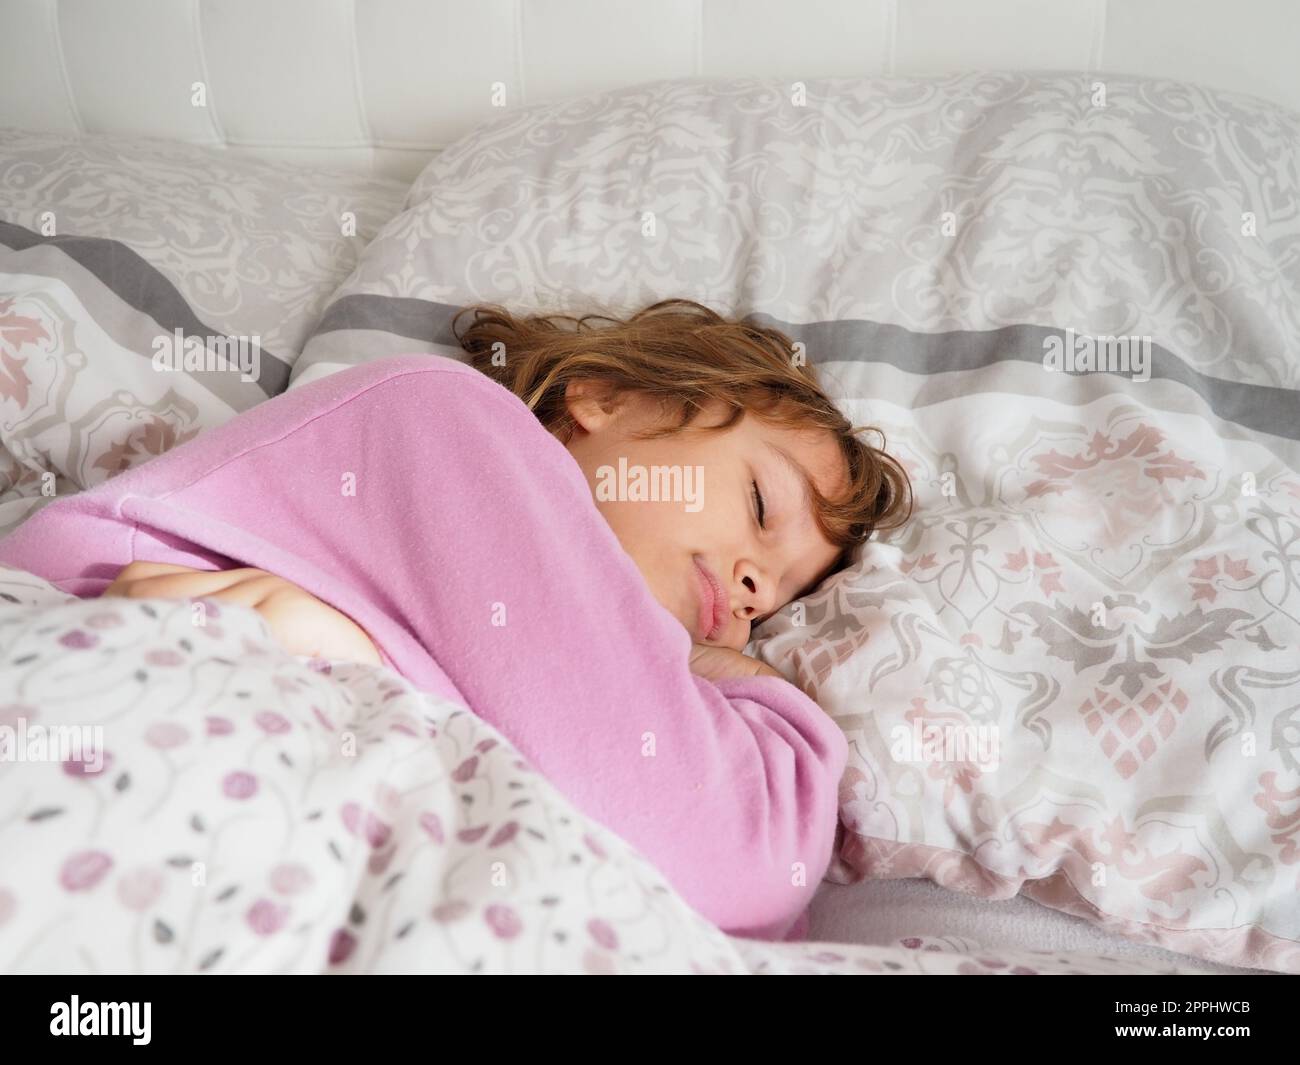 Una bella ragazza caucasica di 8 anni con capelli biondi, vestita con pigiama rosa, dorme su un letto con una soffice coperta, abbracciando un cuscino. La luce soffusa del sole del mattino scorre attraverso la finestra. Foto Stock